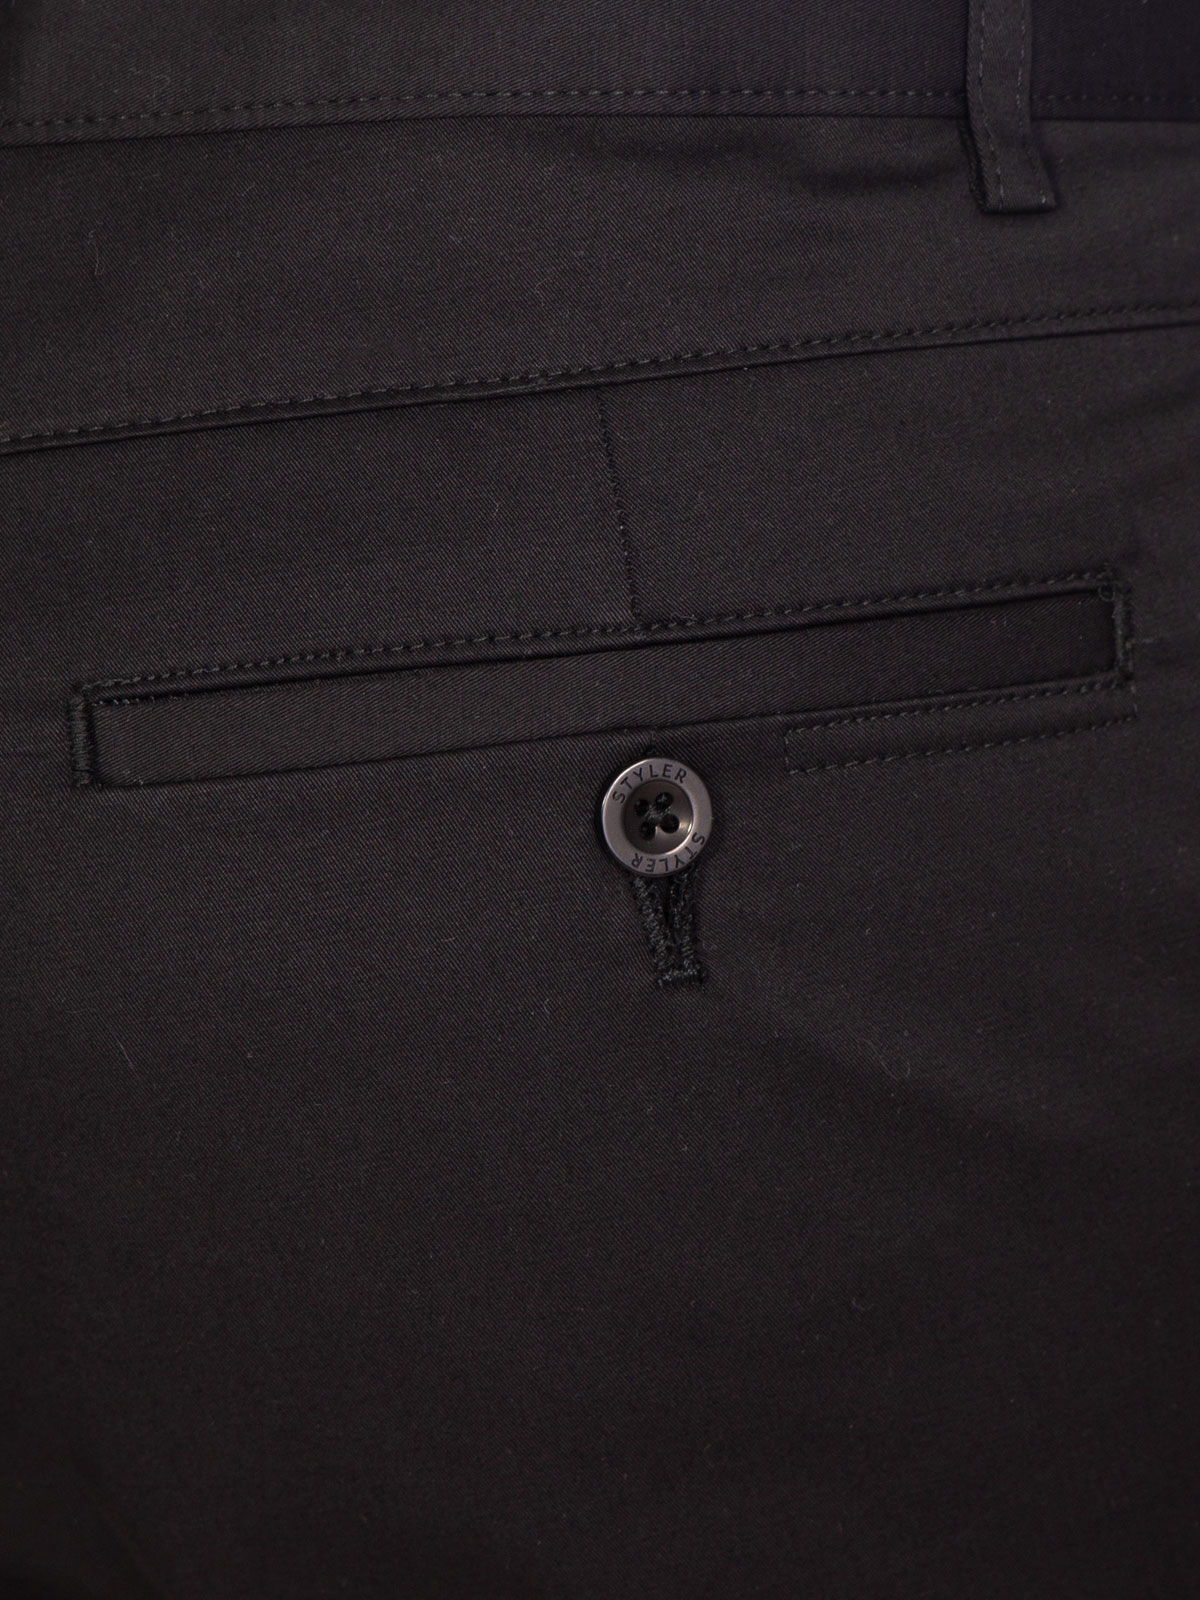 Σπορ κομψό παντελόνι σε μαύρο χρώμα - 63190 € 44.43 img4